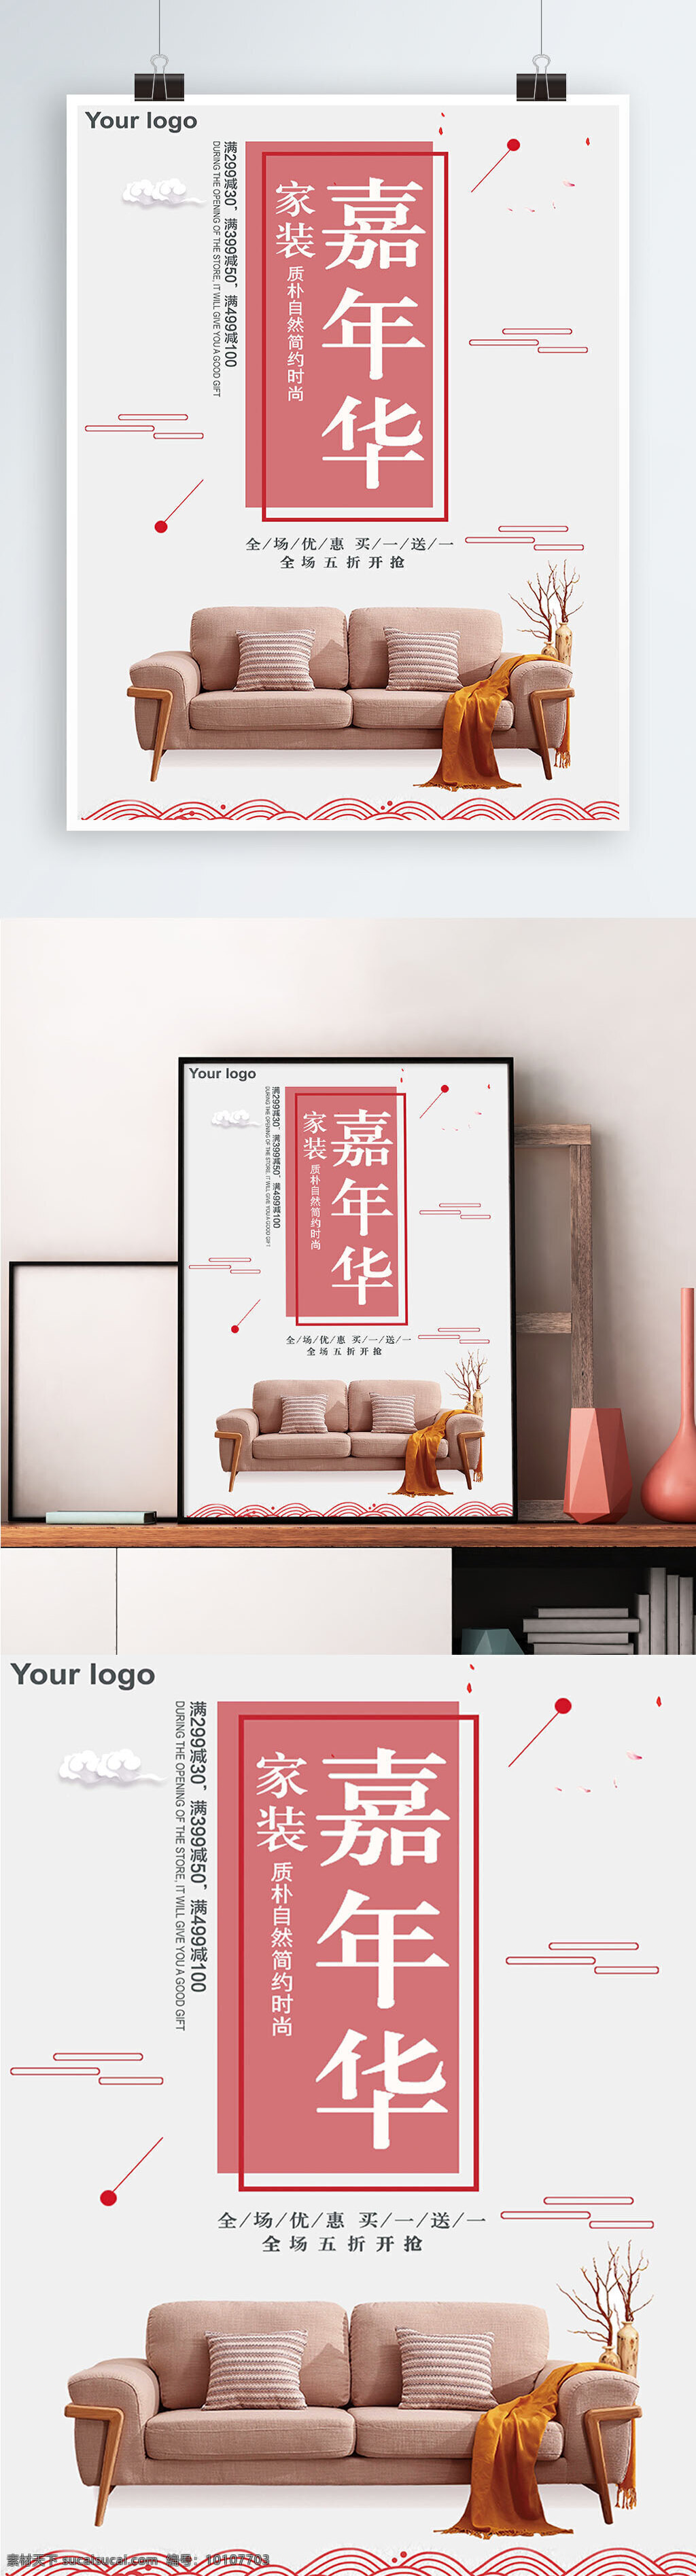 白色 背景 简约 中国 风 家装 嘉年华 宣传海报 中国风 欢迎来电 家具 家居 软装